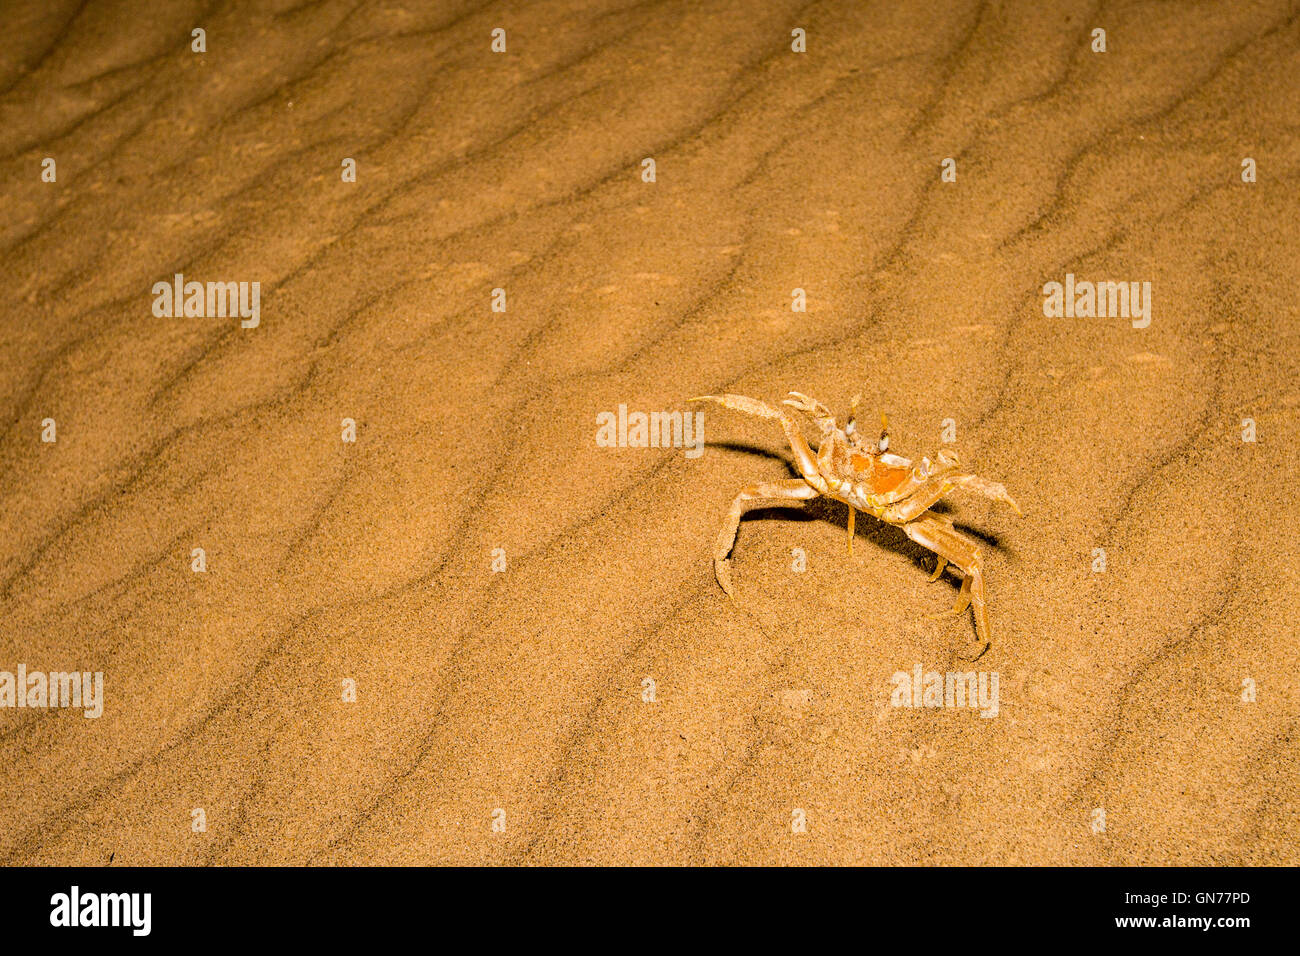 Le crabe fantôme Ocypode touffetée (curseur) sur le sable. Les crabes fantômes vivent sur les plages de sable dans les régions tropicales et subtropicales du monde entier Banque D'Images